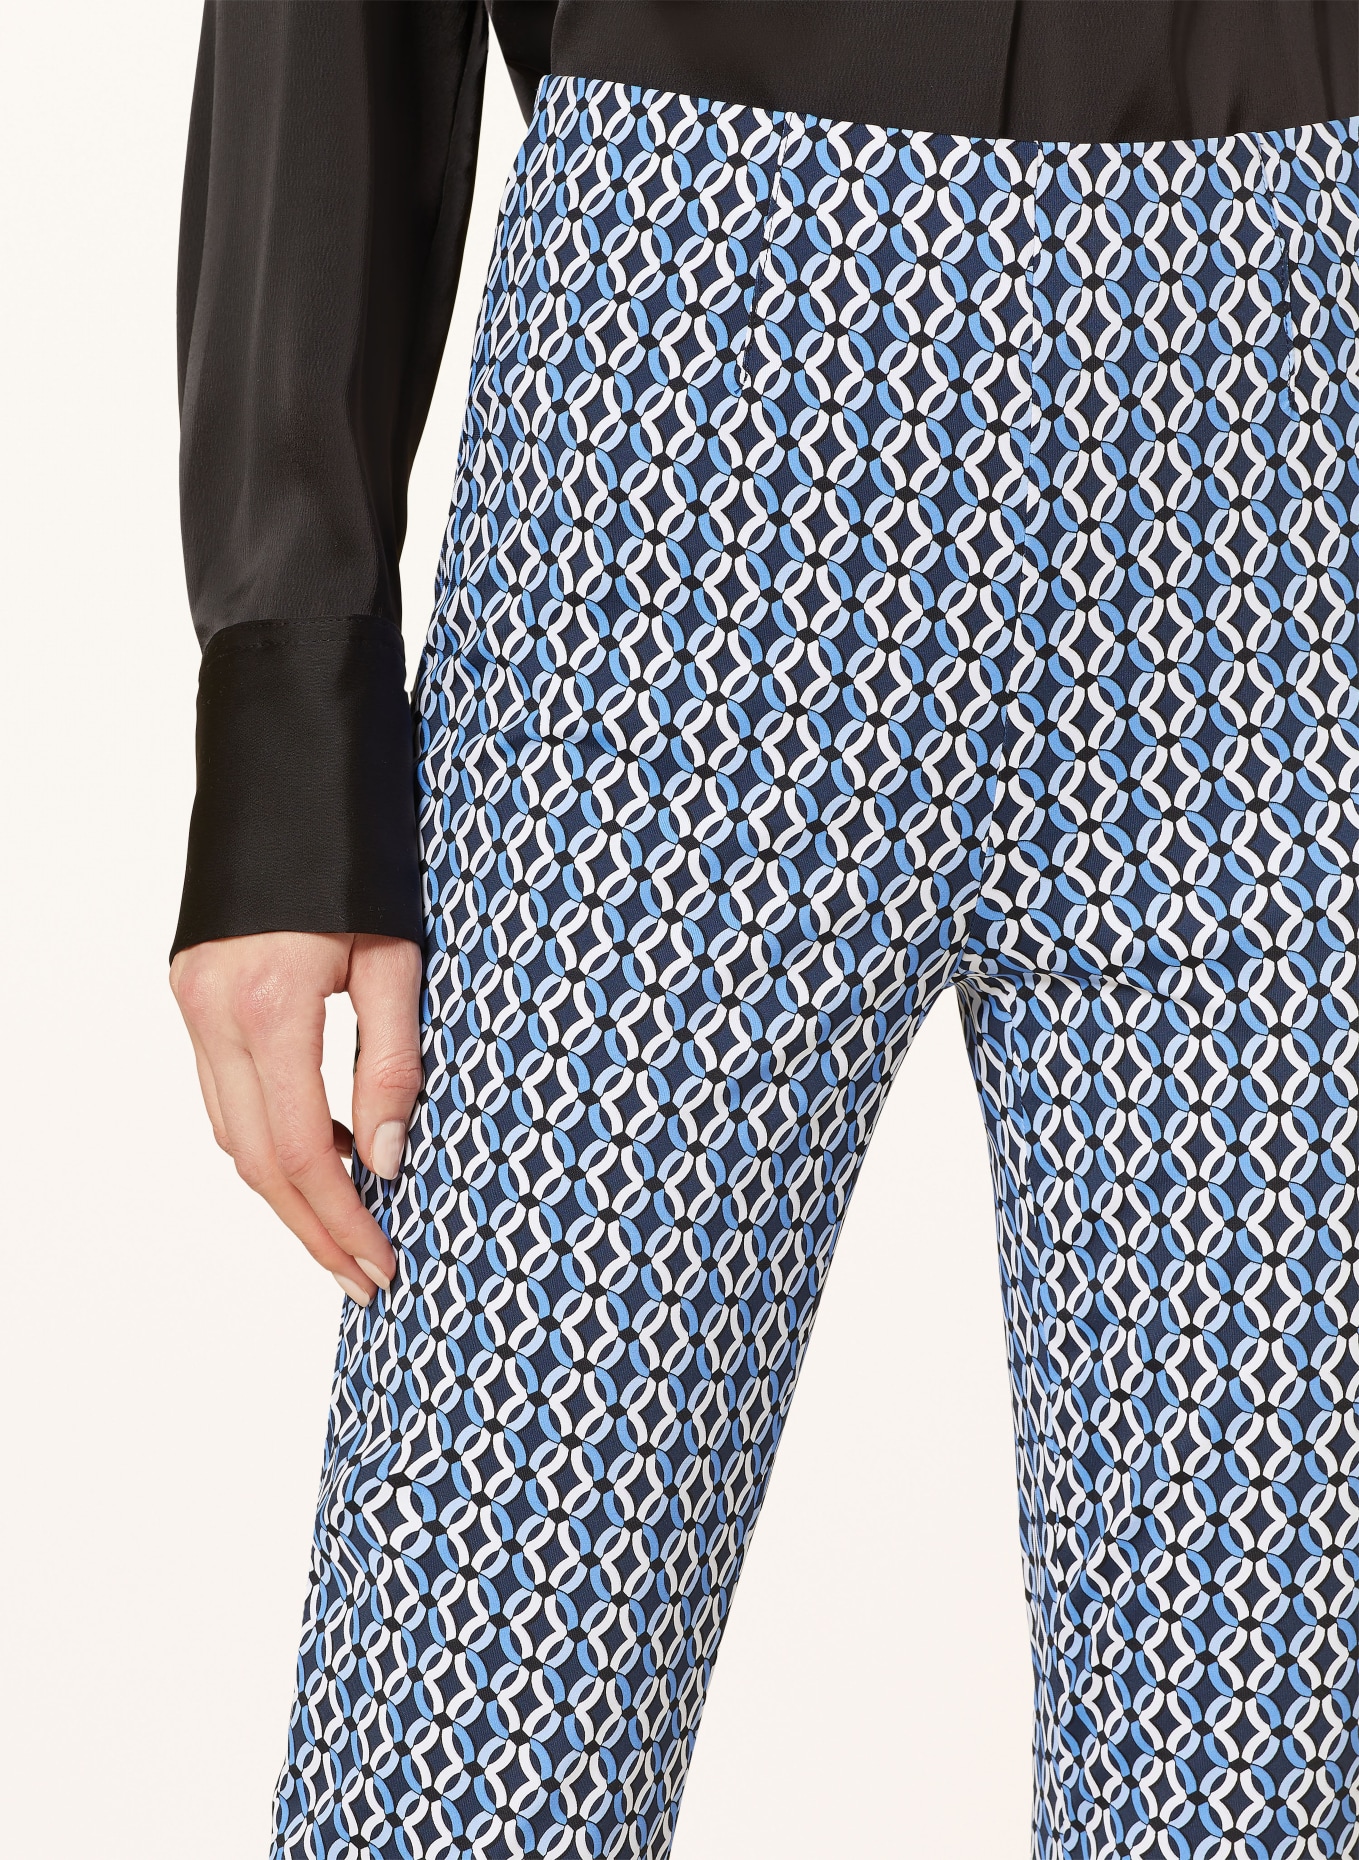 RAFFAELLO ROSSI 7/8 trousers PENNY, Color: DARK BLUE/ WHITE/ LIGHT BLUE (Image 5)